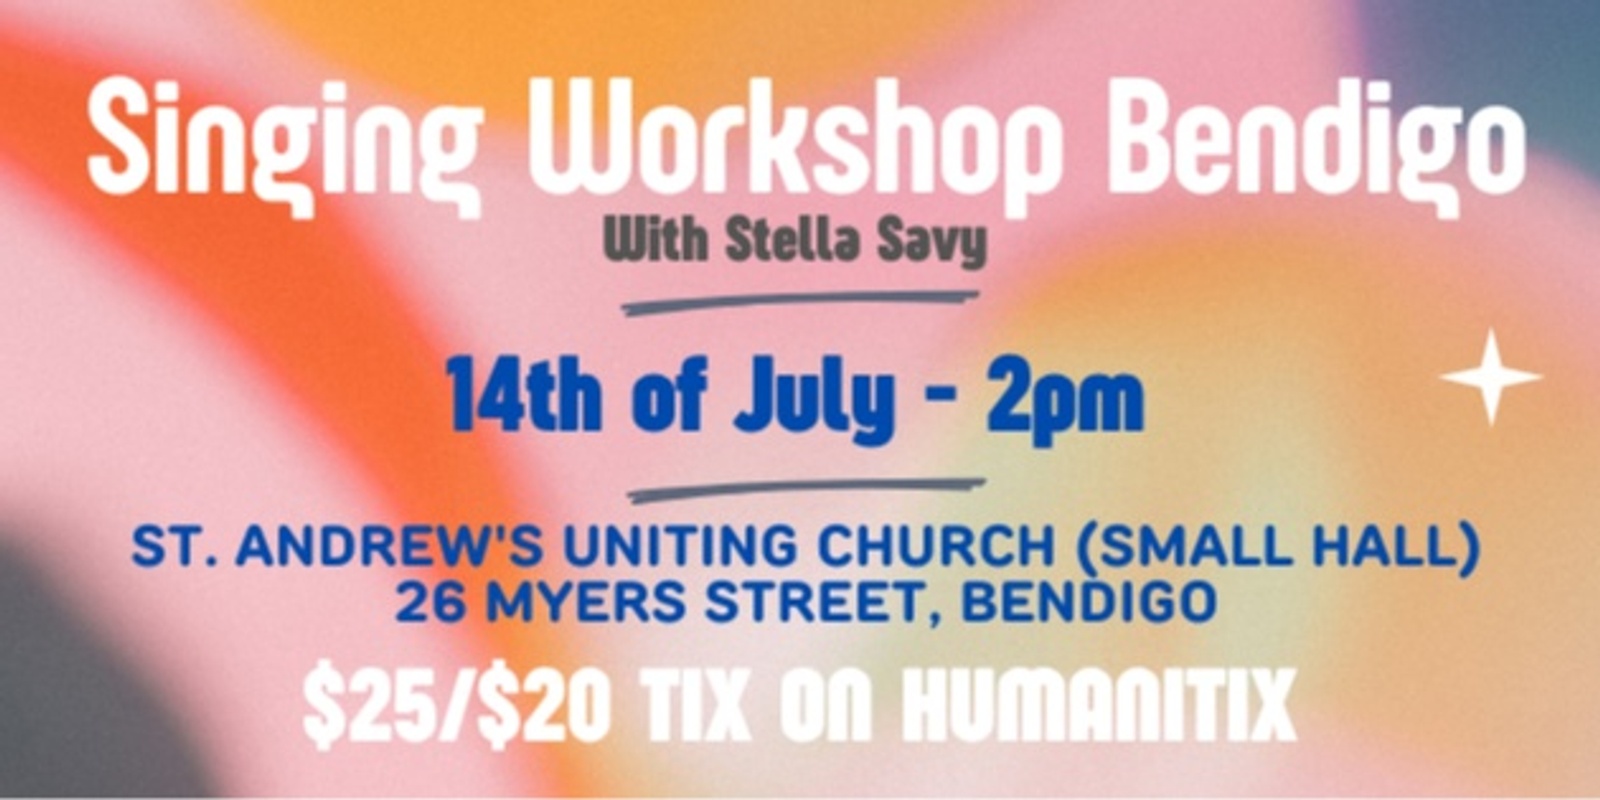 Banner image for 14th July Singing Workshop Bendigo